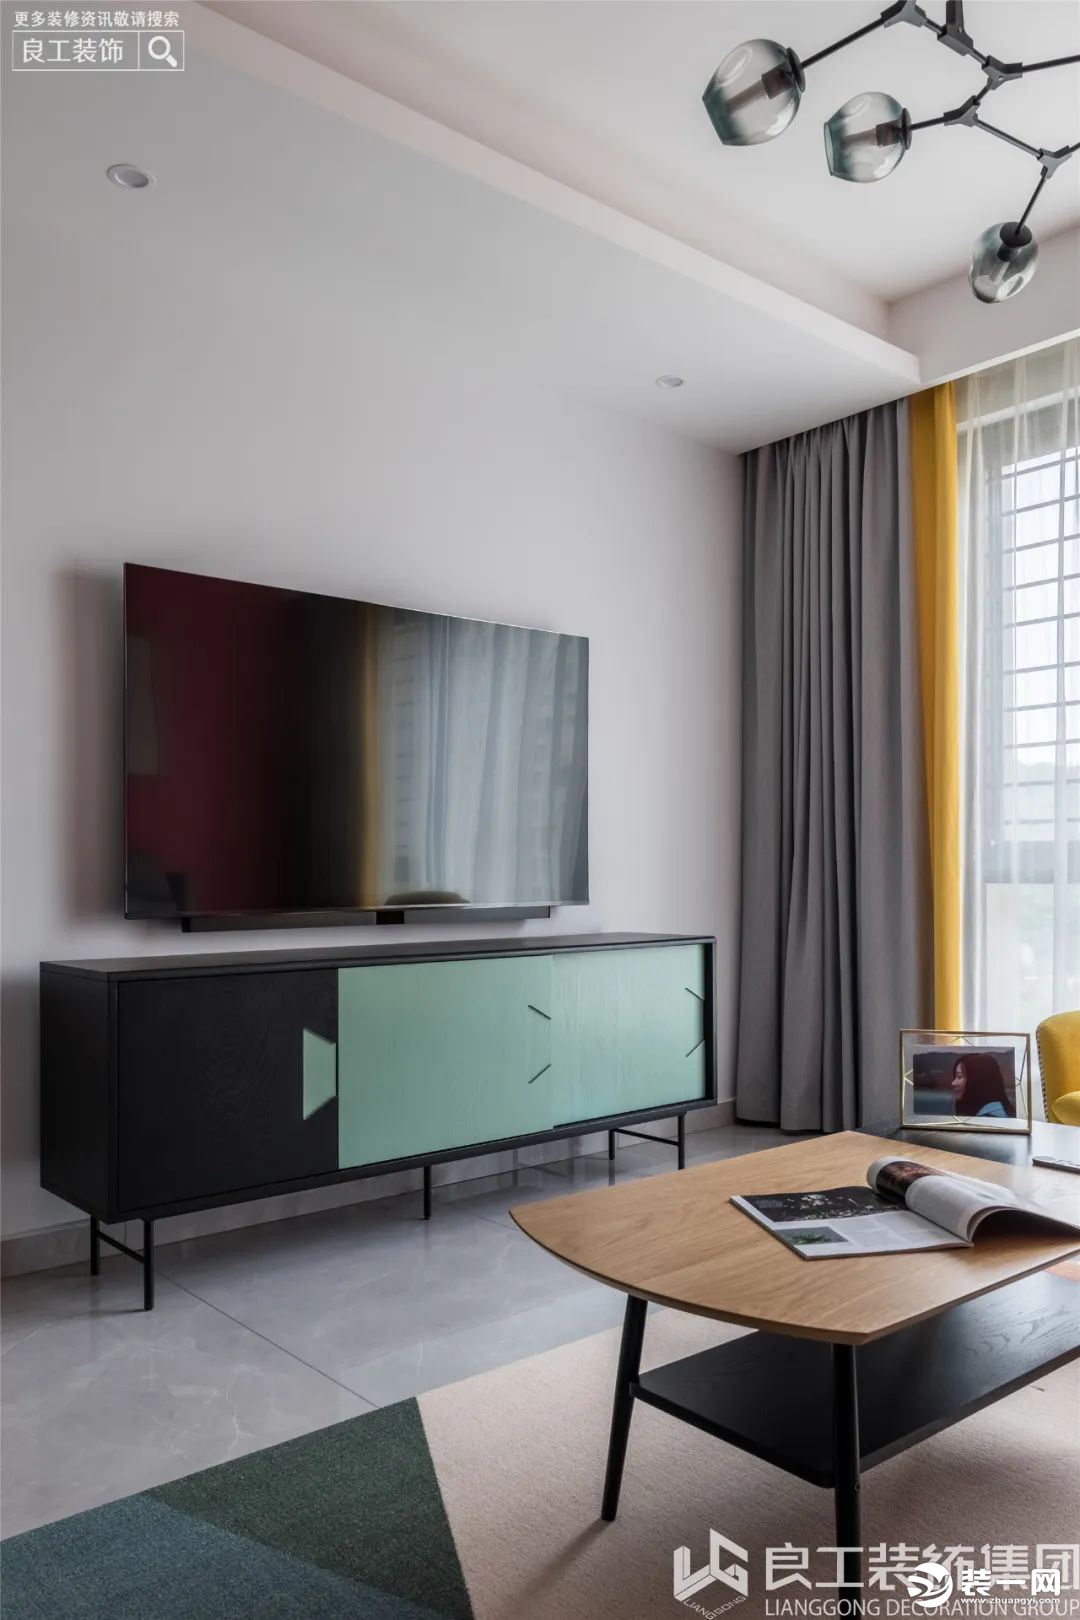 电视背景墙选用了纯色——淡灰，用黑、蓝撞色的时尚电视柜来丰富墙面，增加了空间的层次感